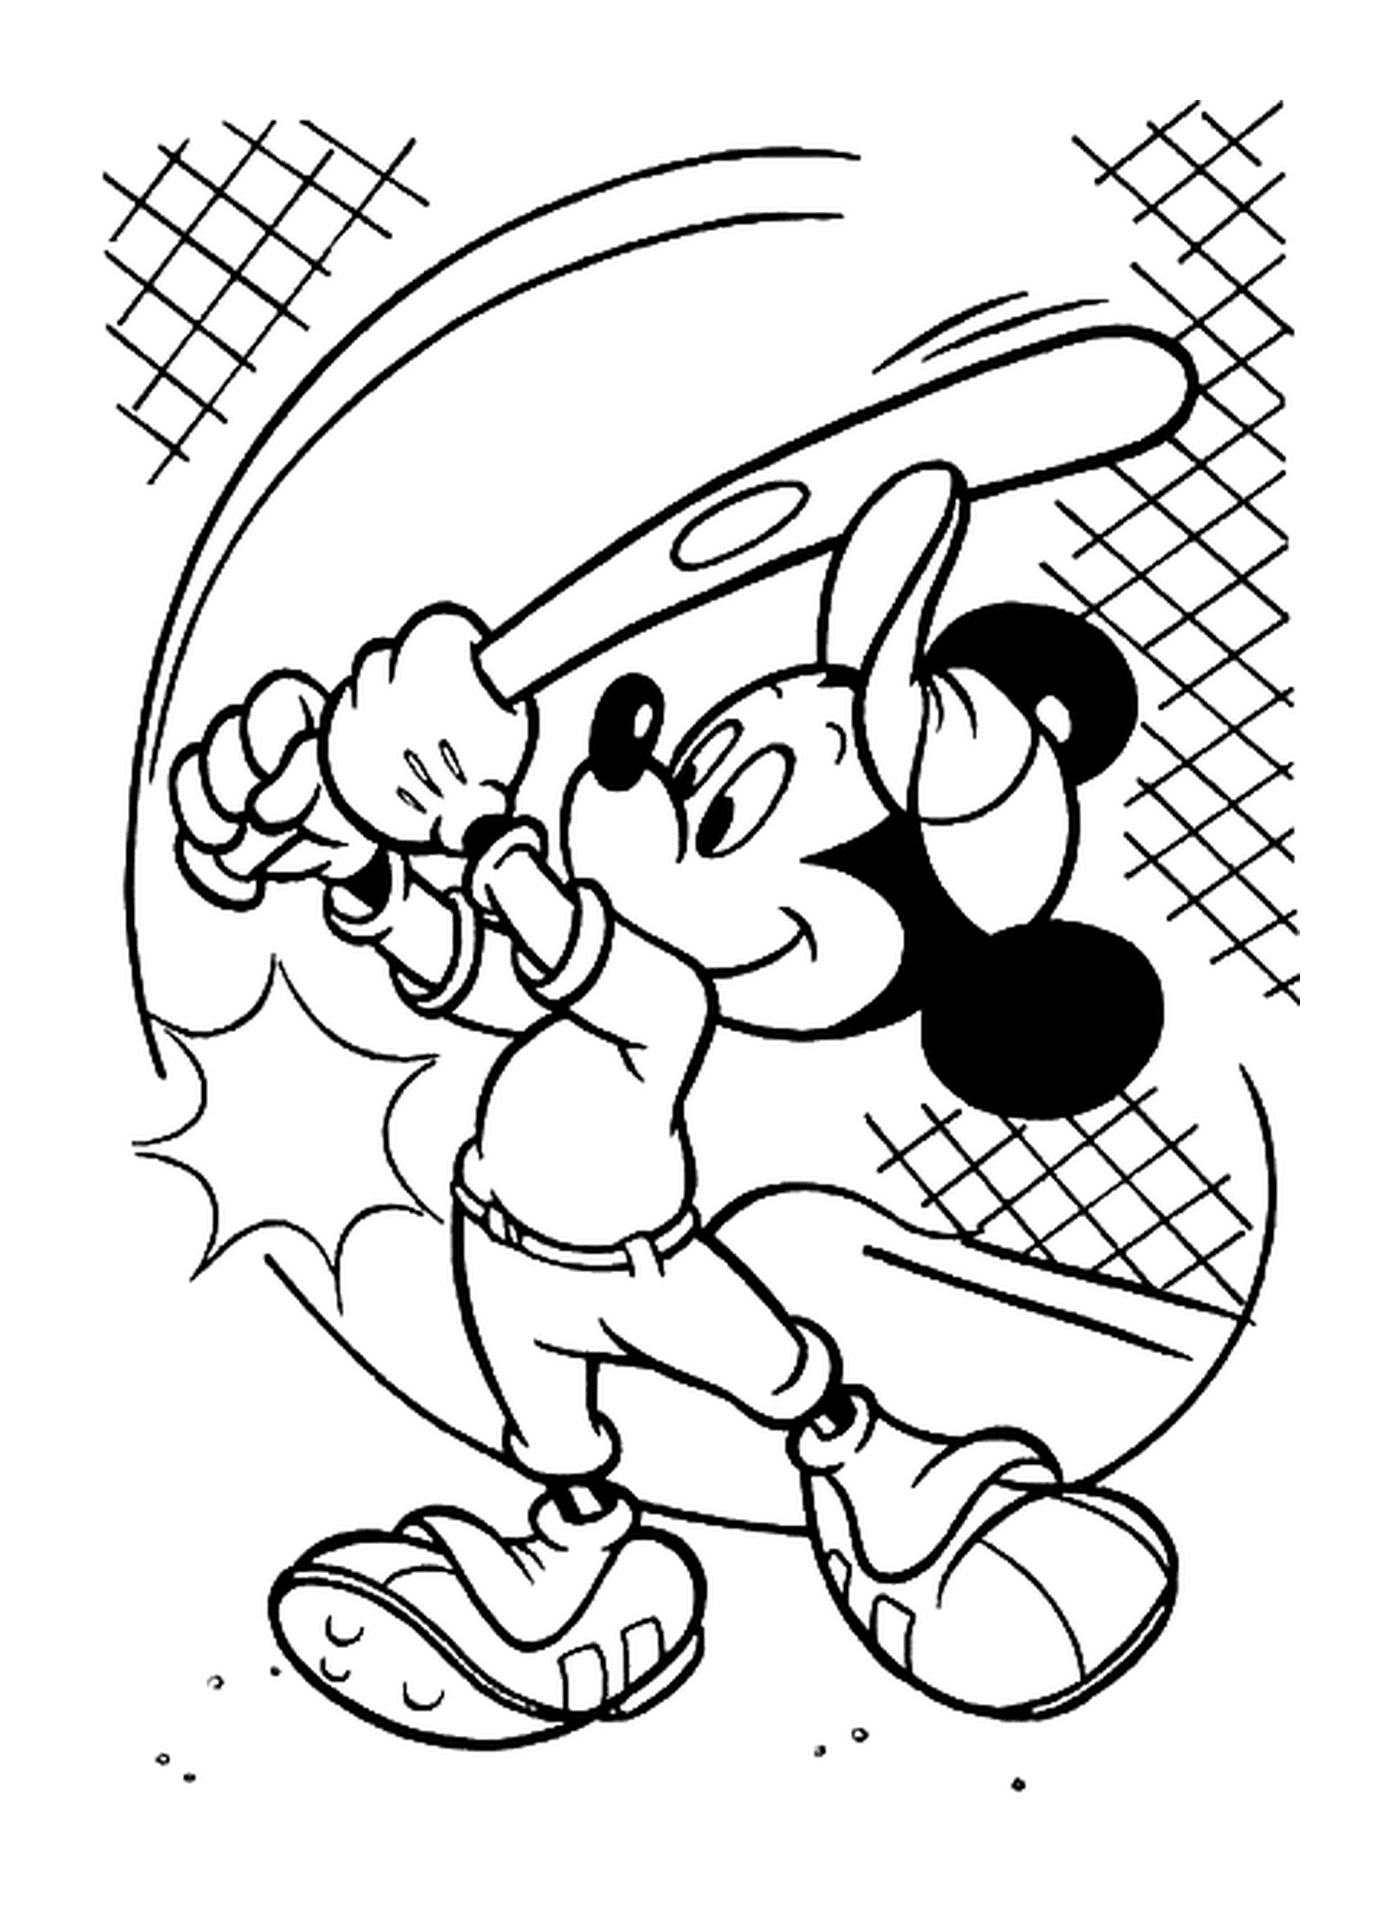  Dibujo de Mickey jugando béisbol: sosteniendo un bate de béisbol 